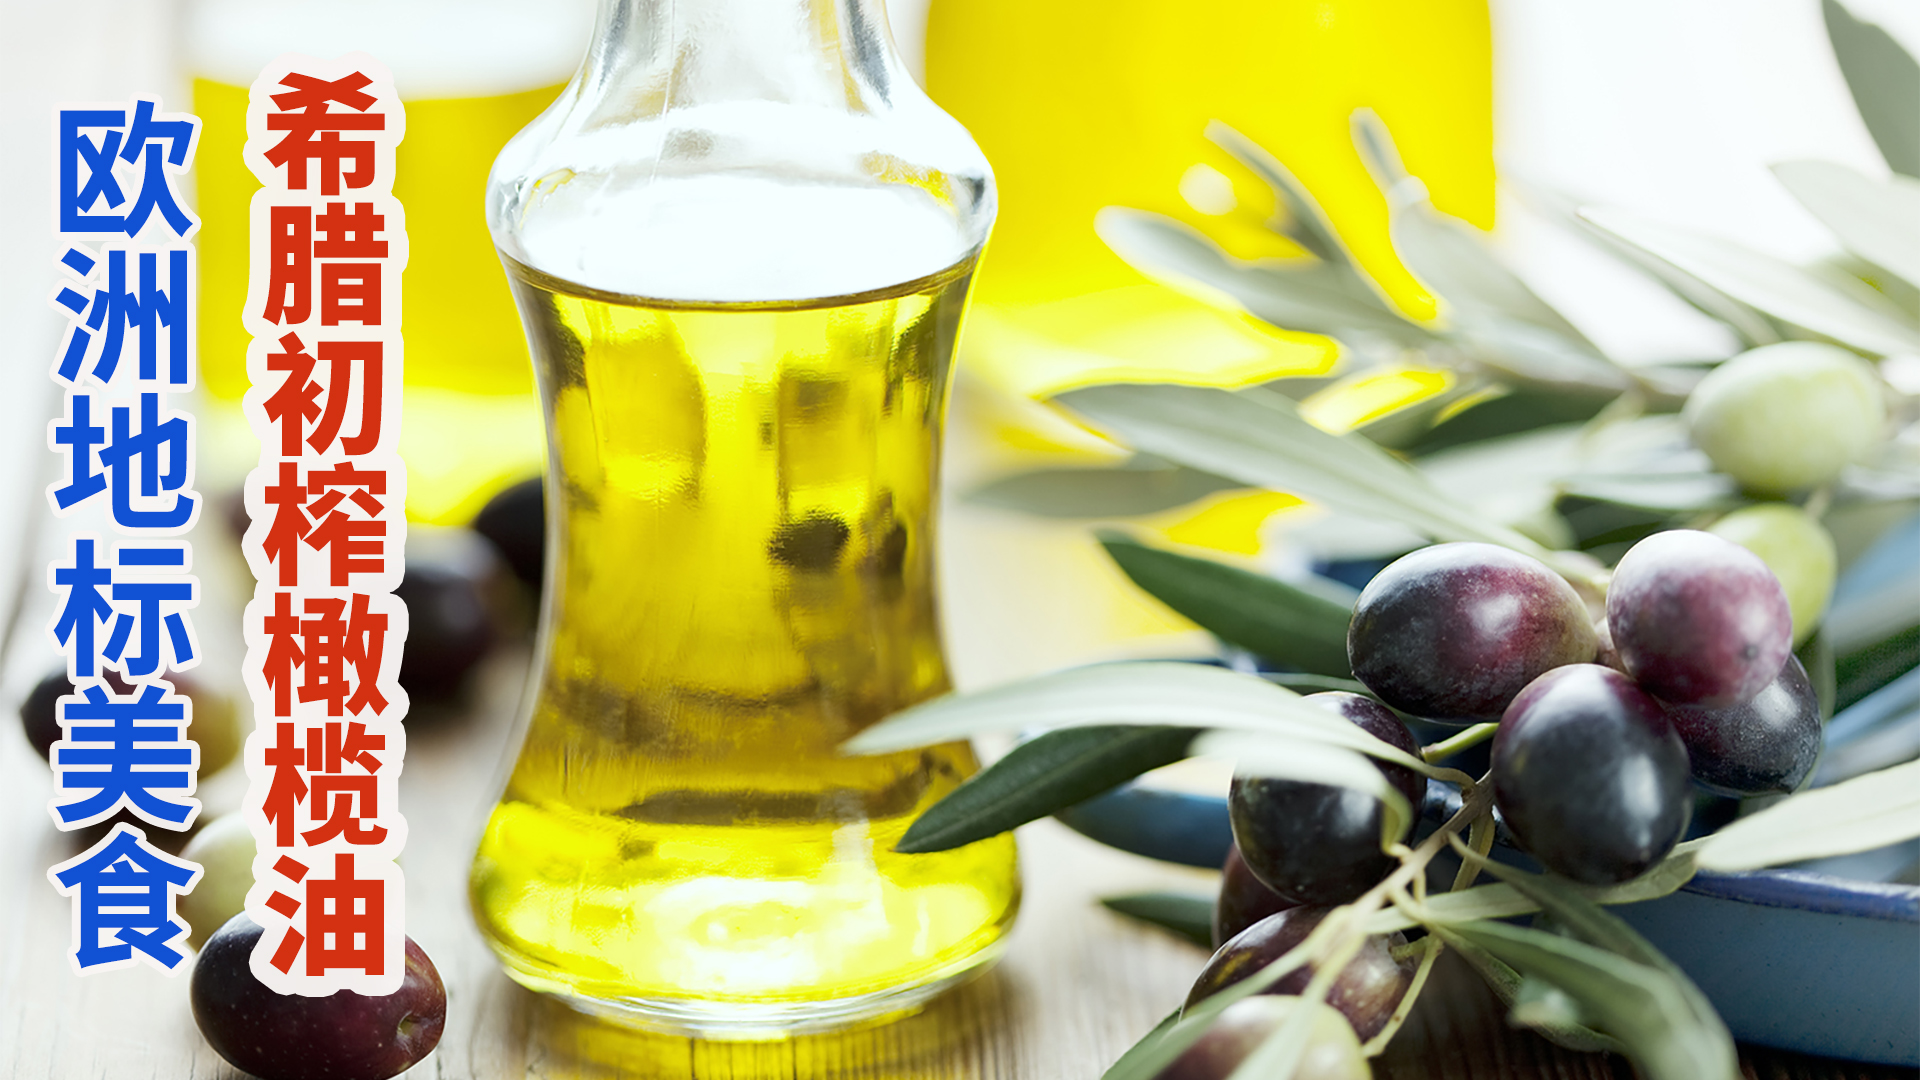 戴蒙蒂诺 希腊特级初榨橄榄油 500ml - 希腊橄榄油